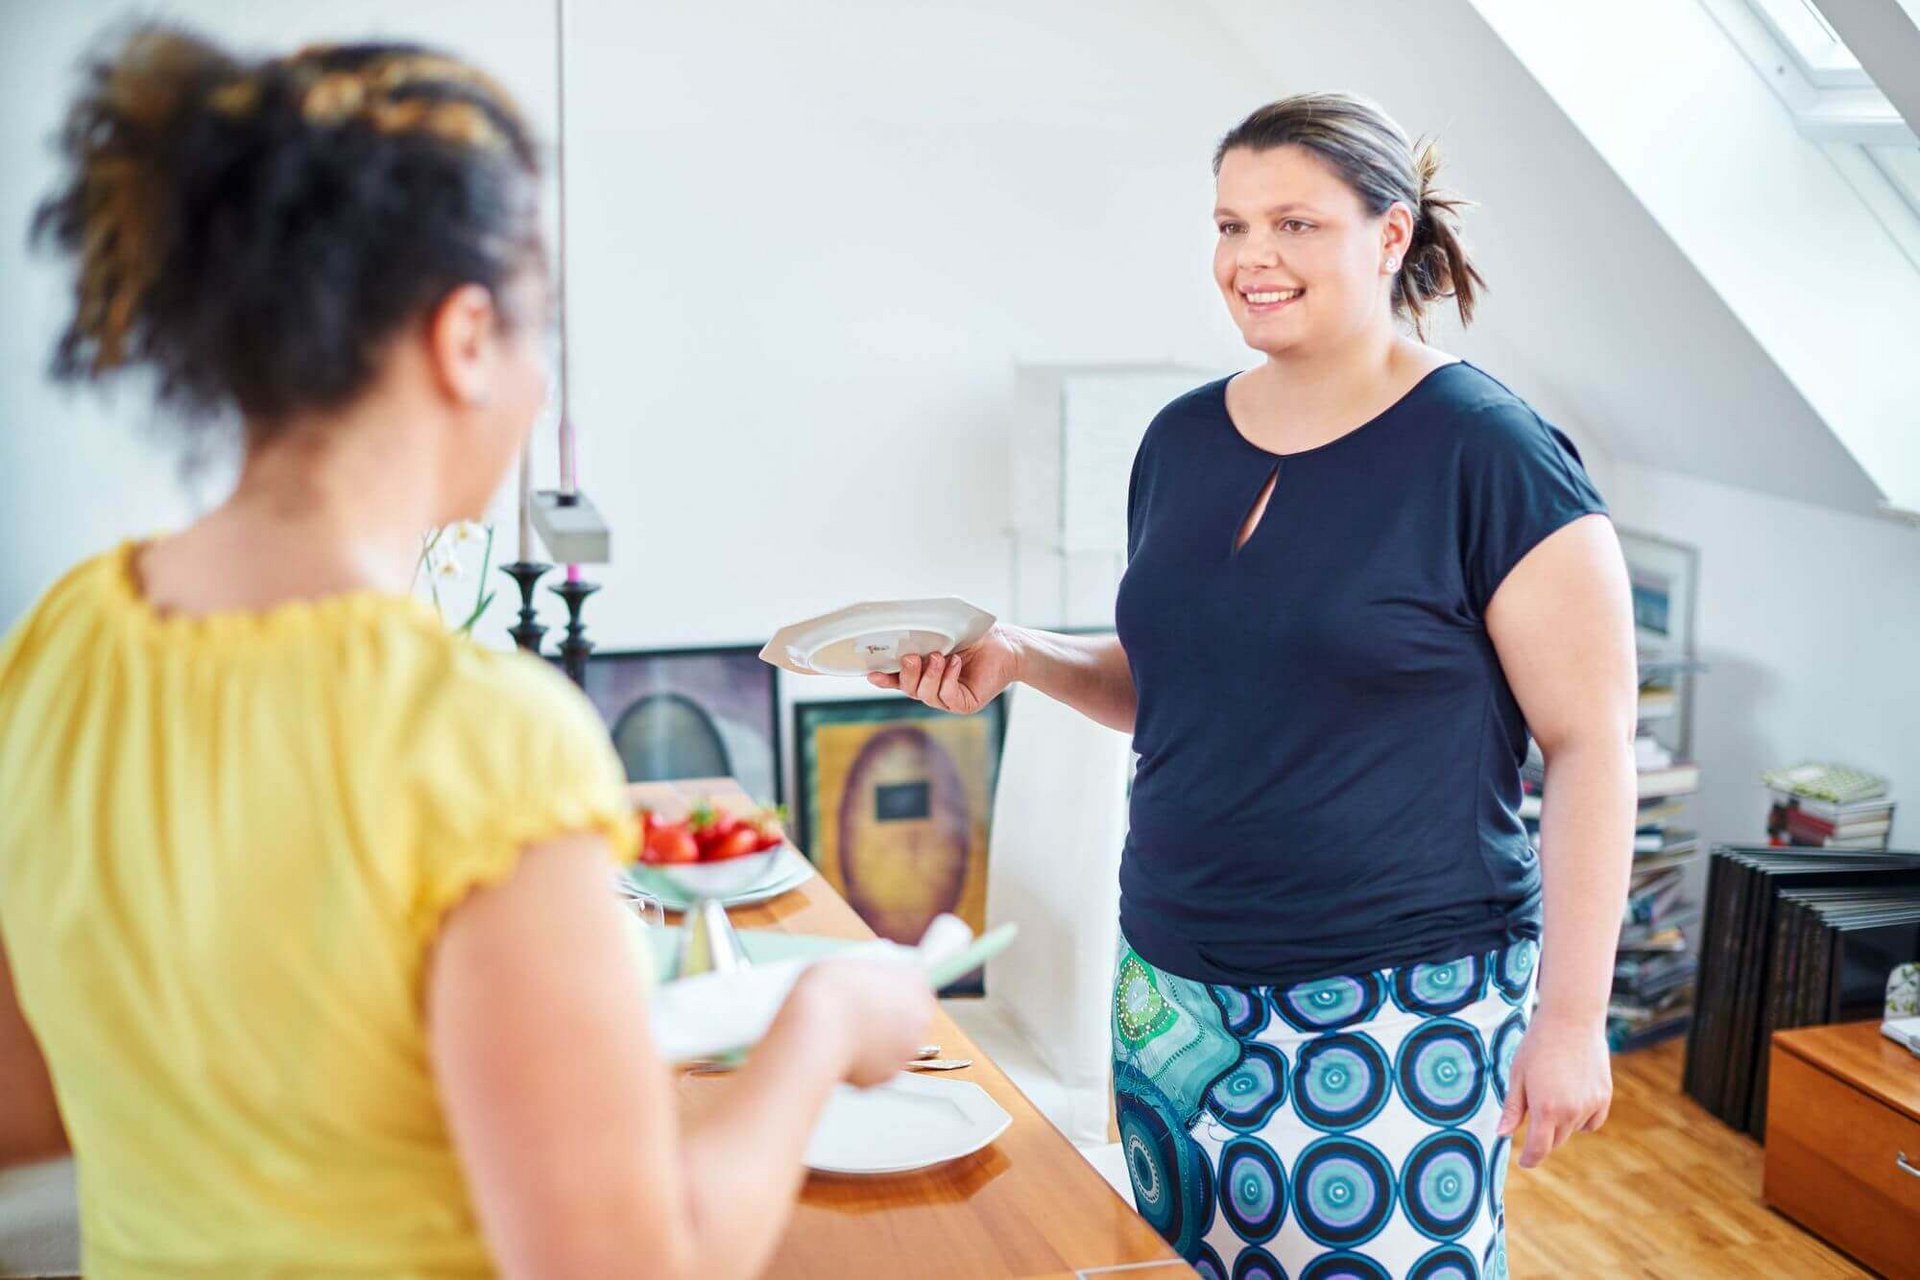 Zwei Frauen stehen in einer Küche und kochen zusammen. Eine gesunde und ausgewogene Ernährung ist sehr hilfreich bei der Behandlung von Lipolymphödemen.